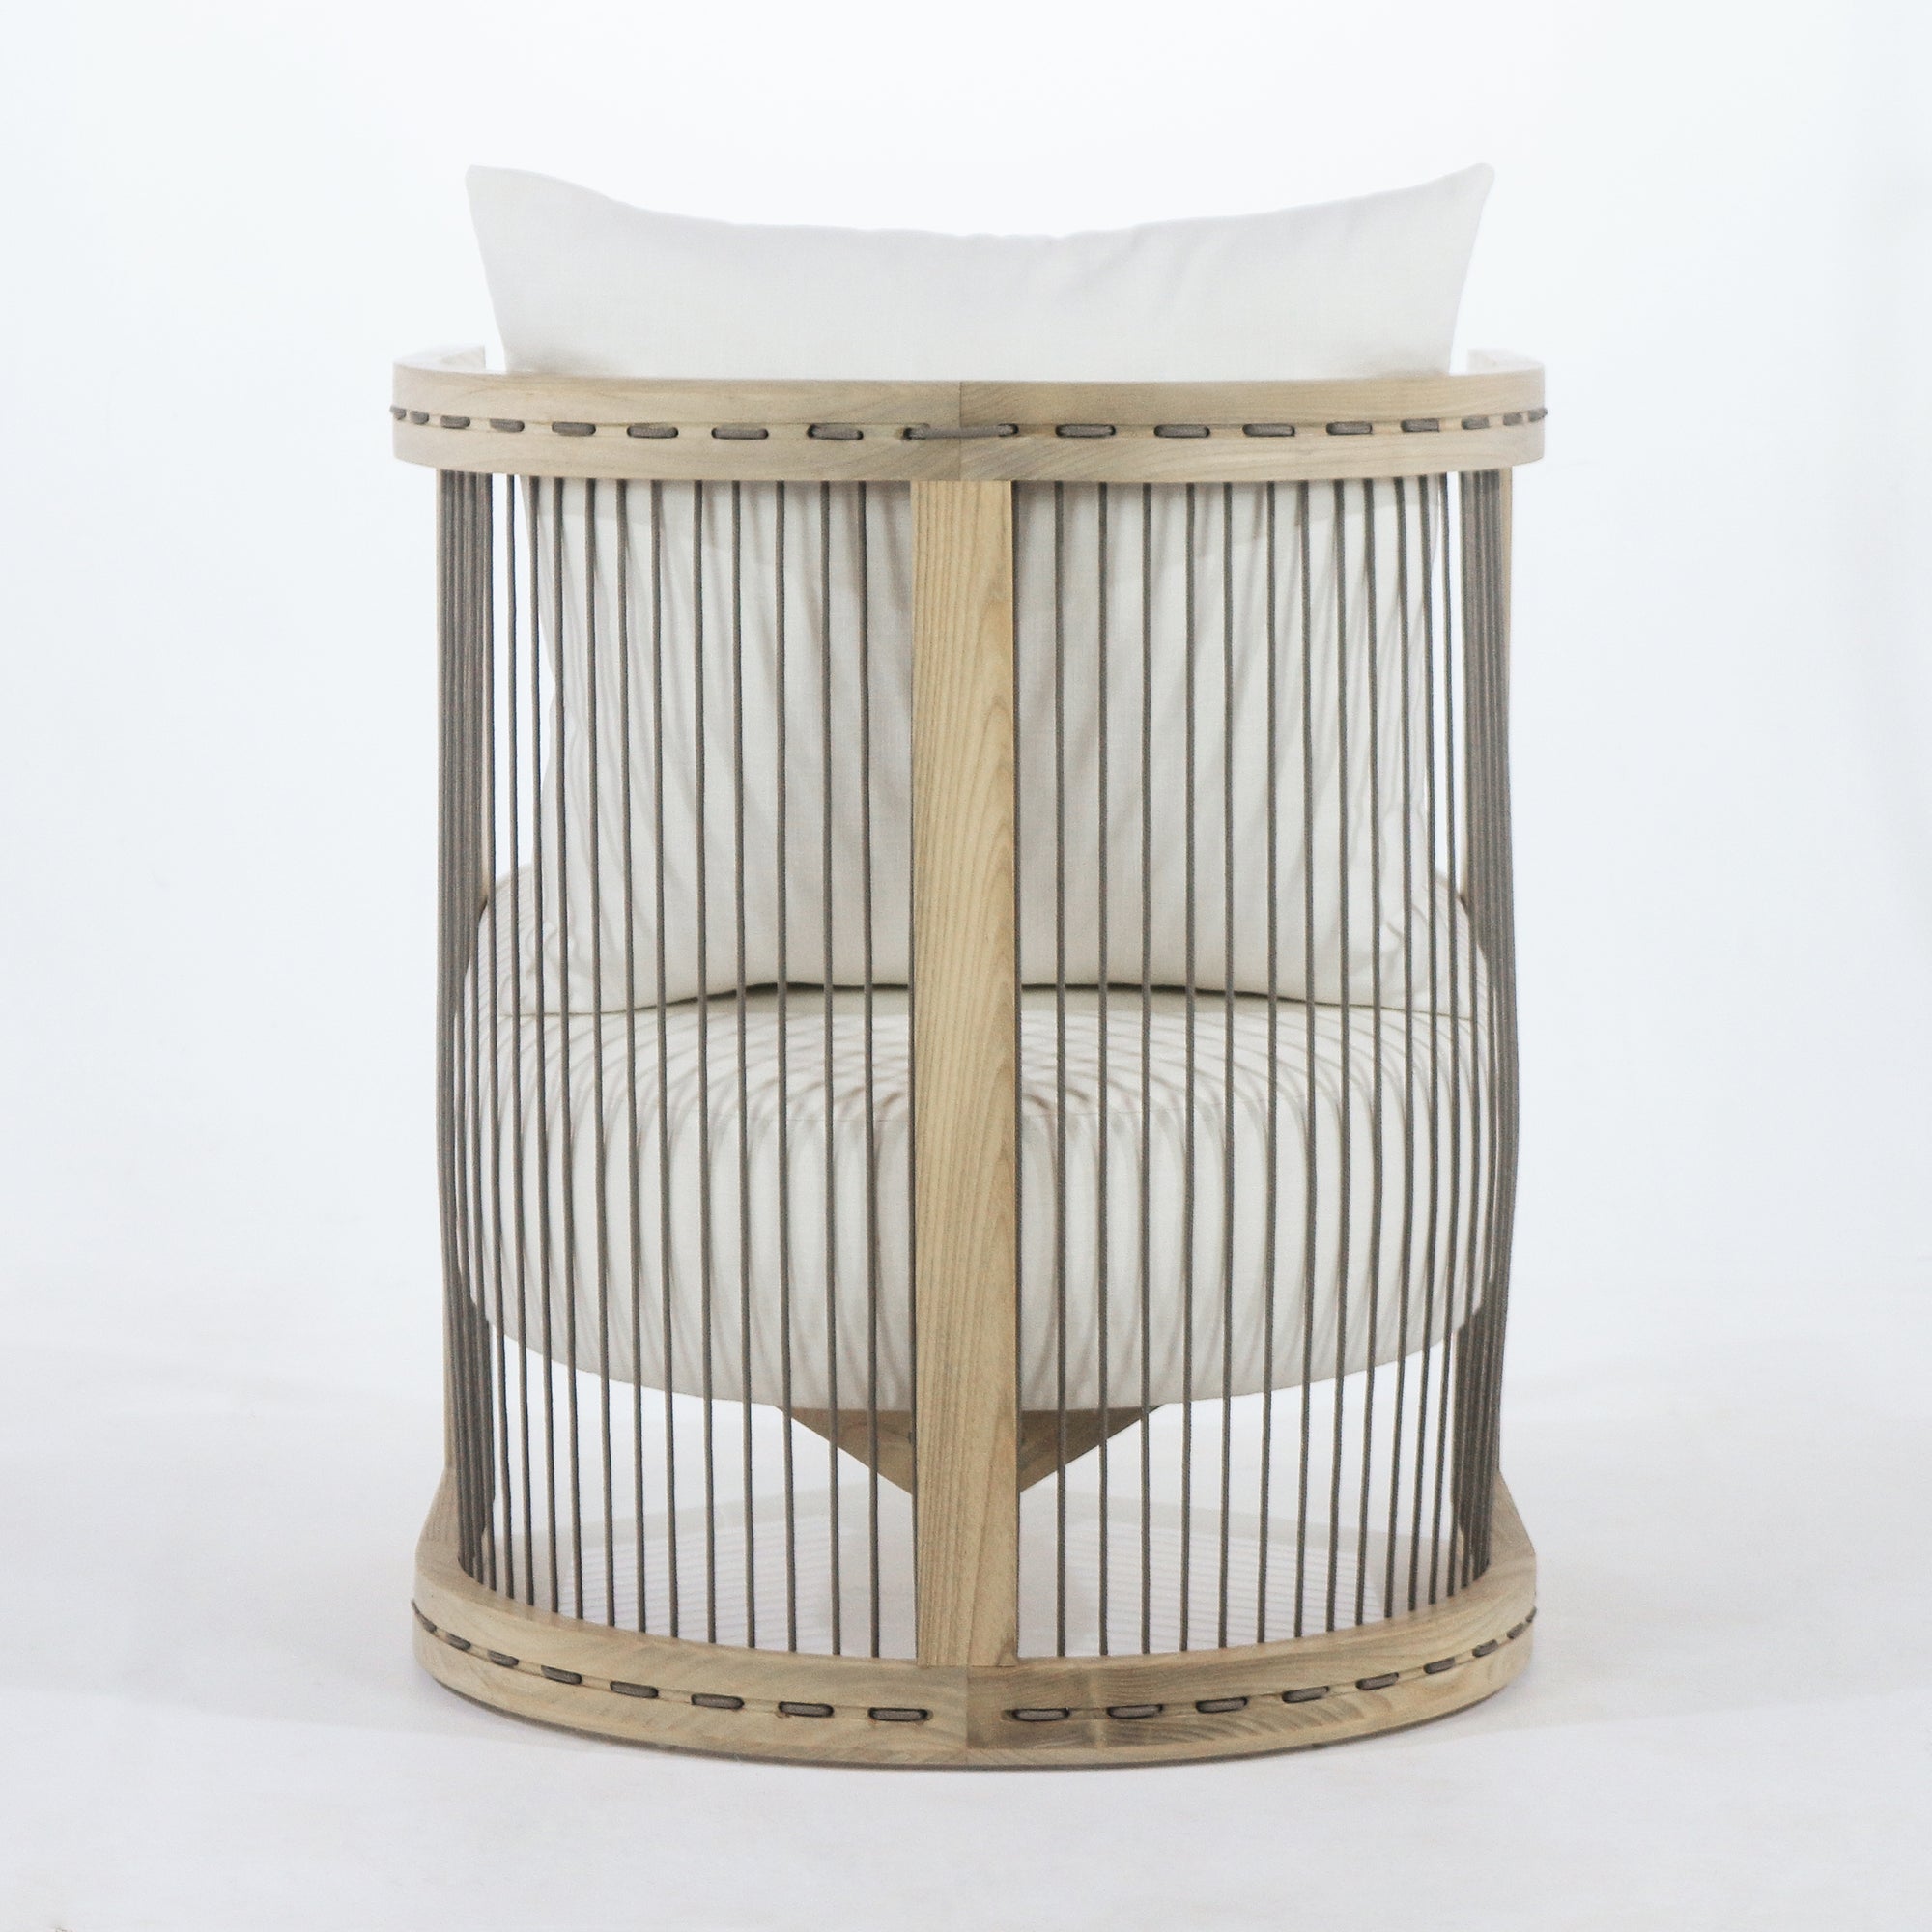 Pajan Dining Chair - INTERIORTONIC